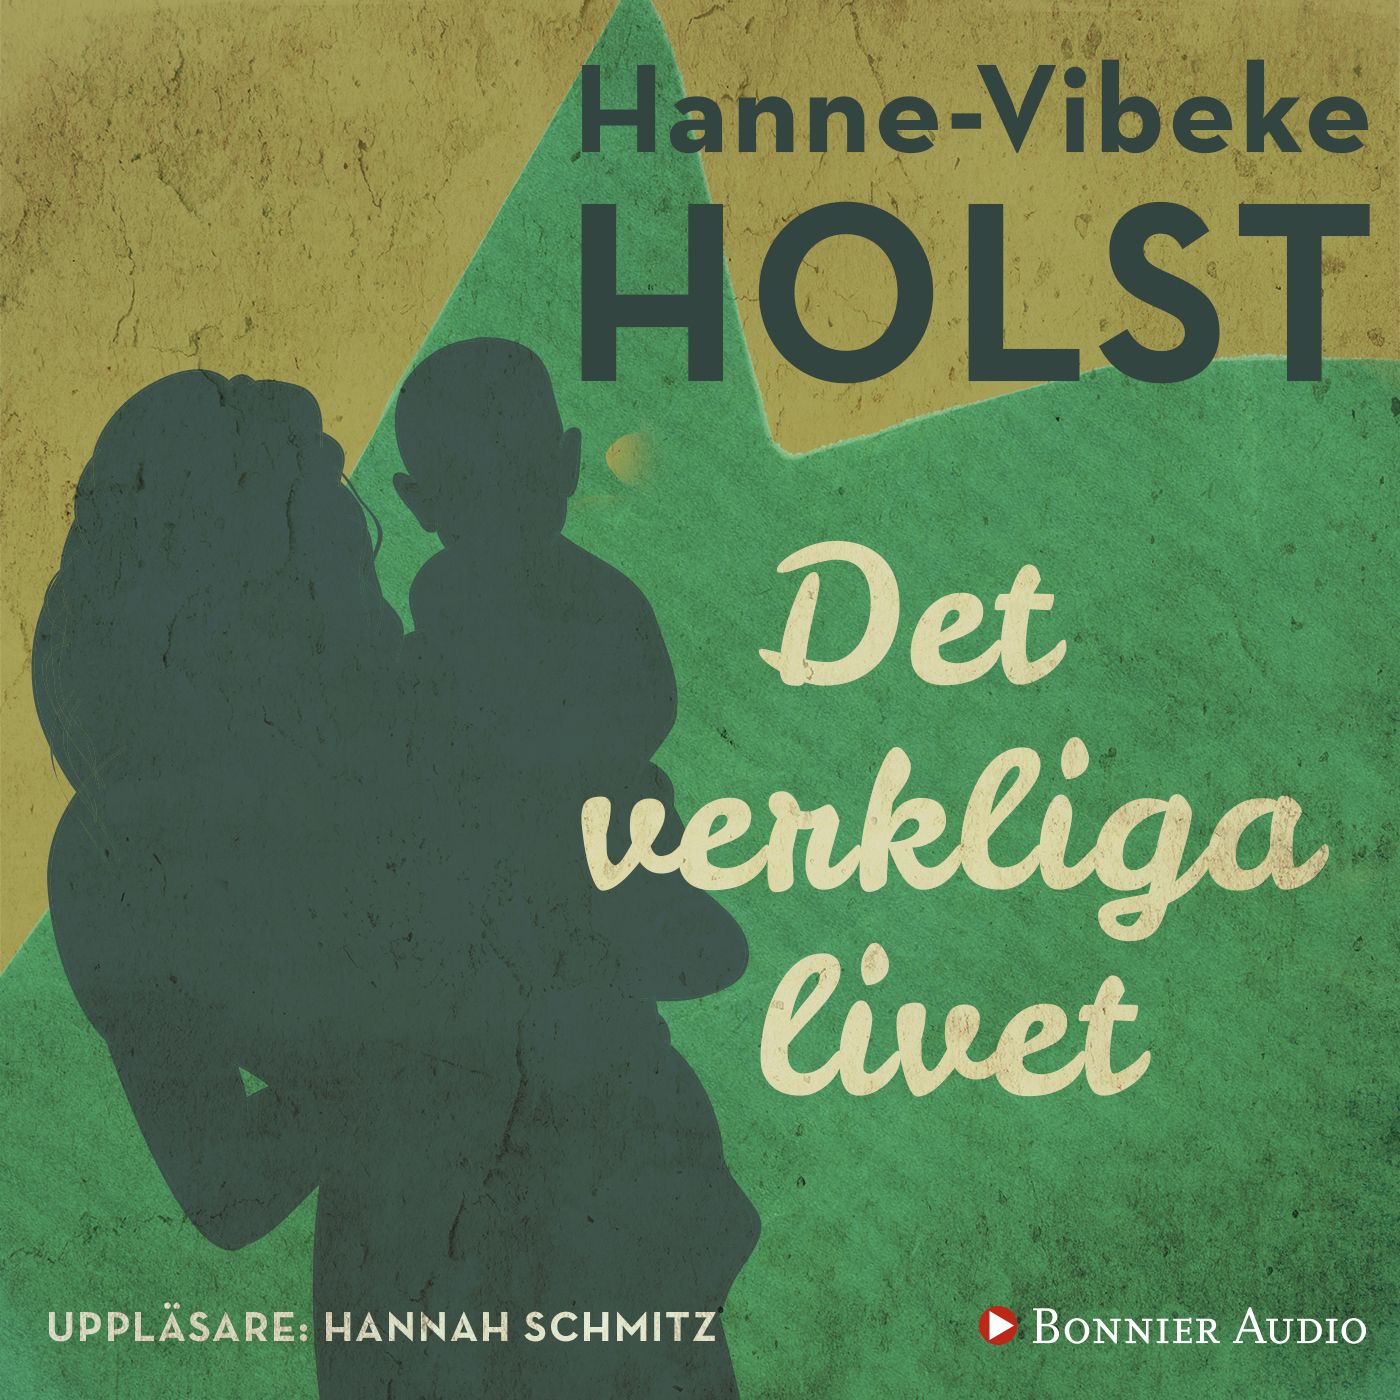 Det verkliga livet, audiobook by Hanne-Vibeke Holst